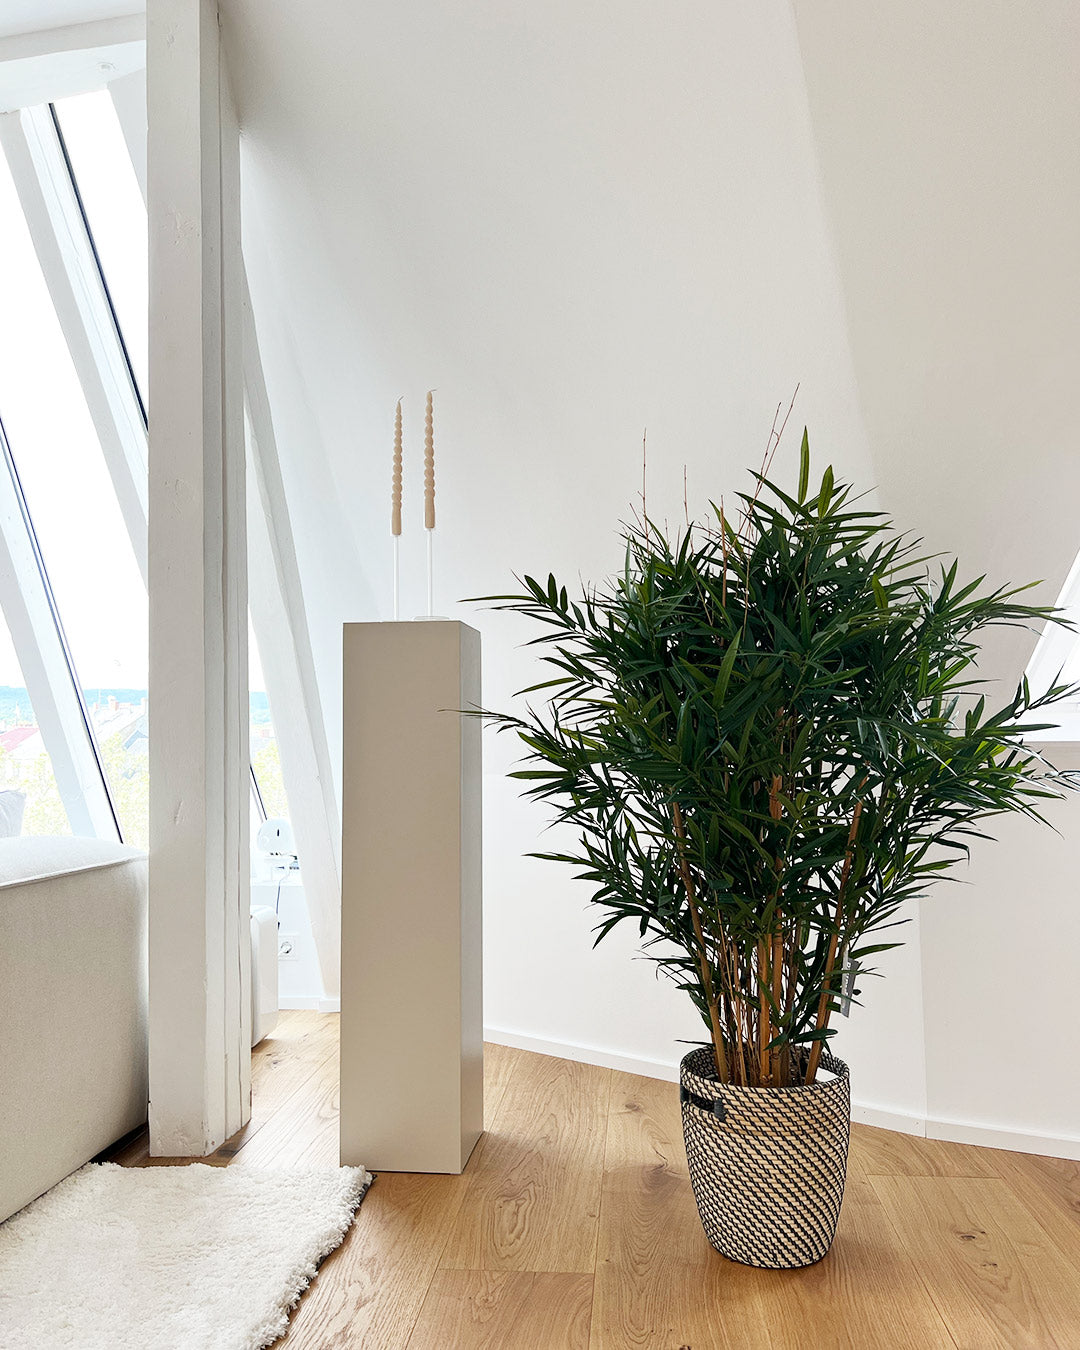 künstlicher bambus marleen in wohnzimmer mit tollem blick